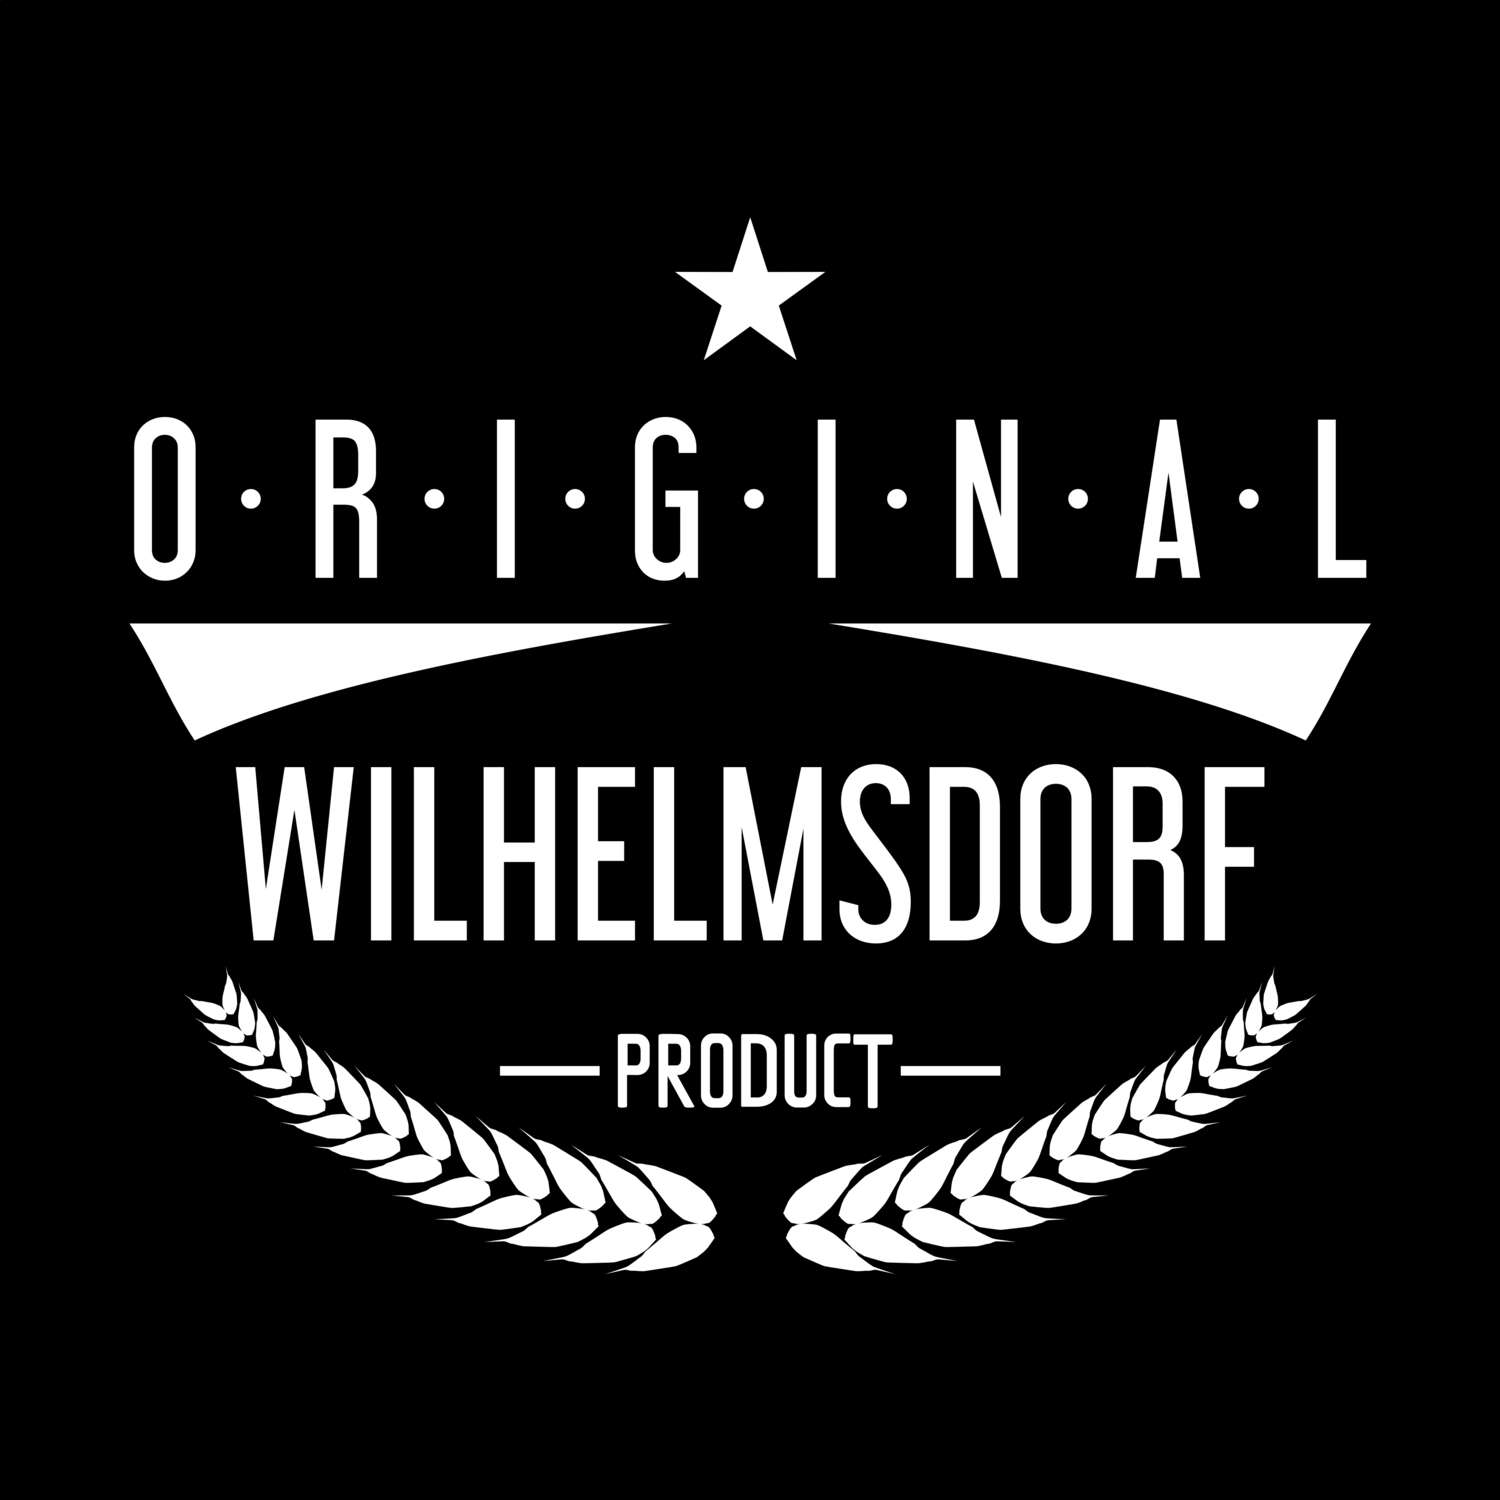 Wilhelmsdorf T-Shirt »Original Product«